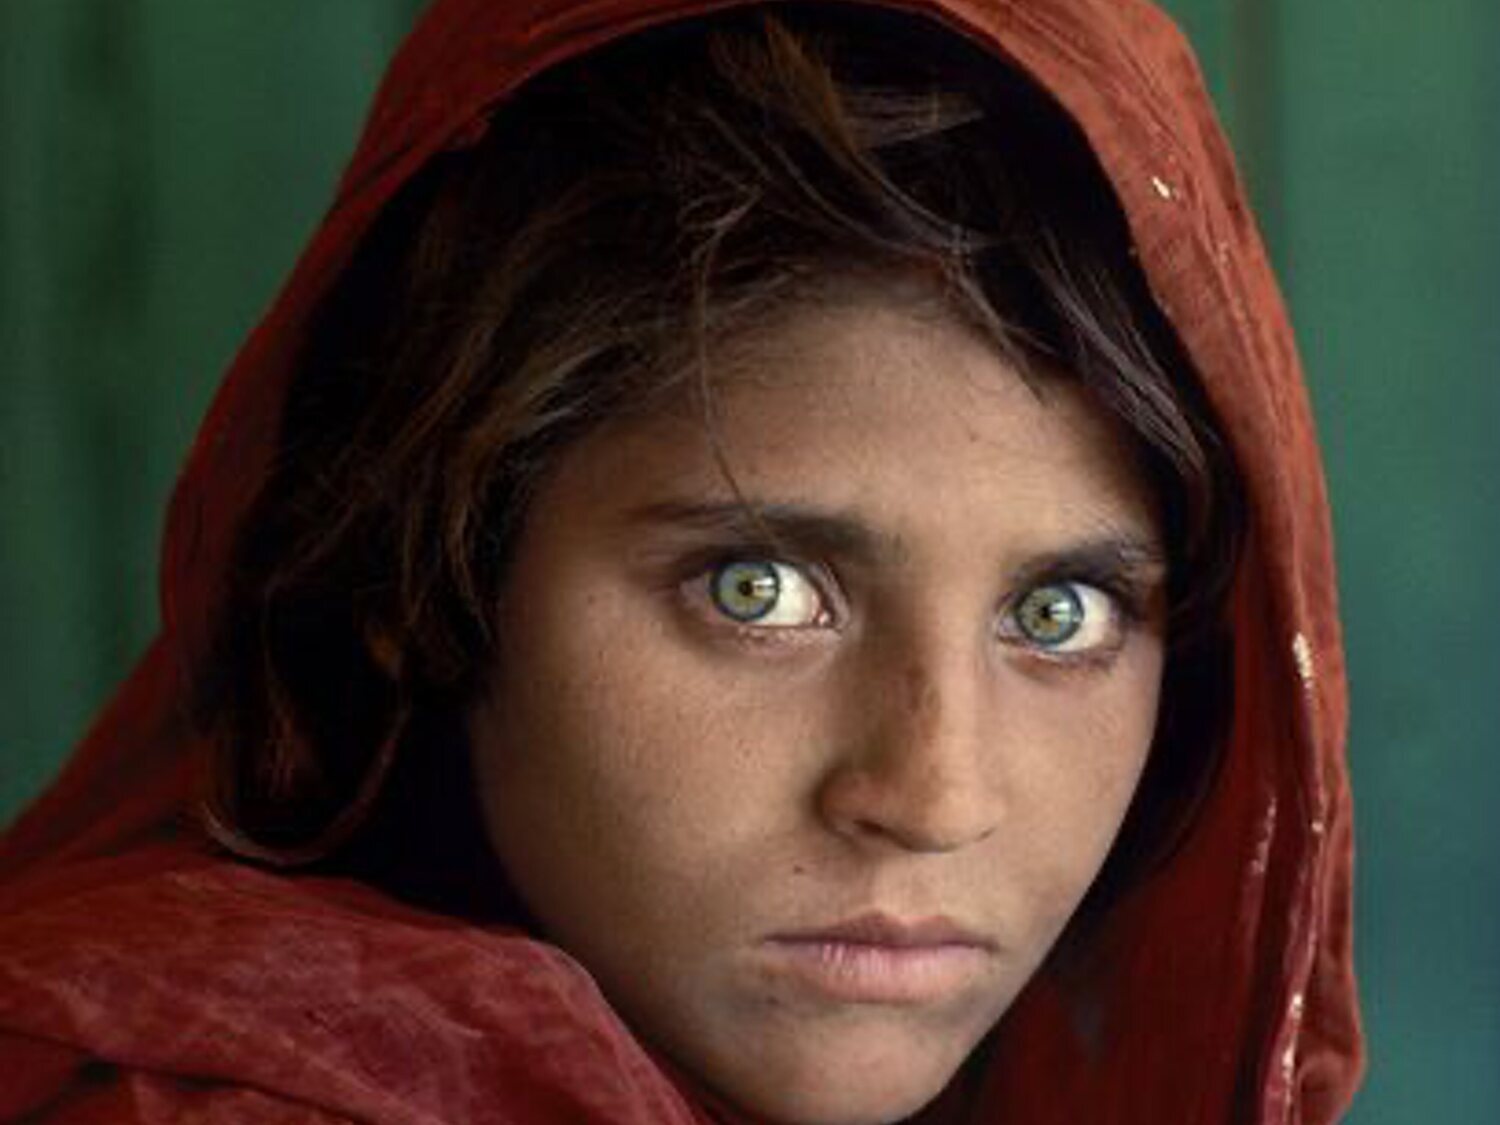 La famosa niña afgana portada de National Geographic llega a Roma como refugiada 37 años después